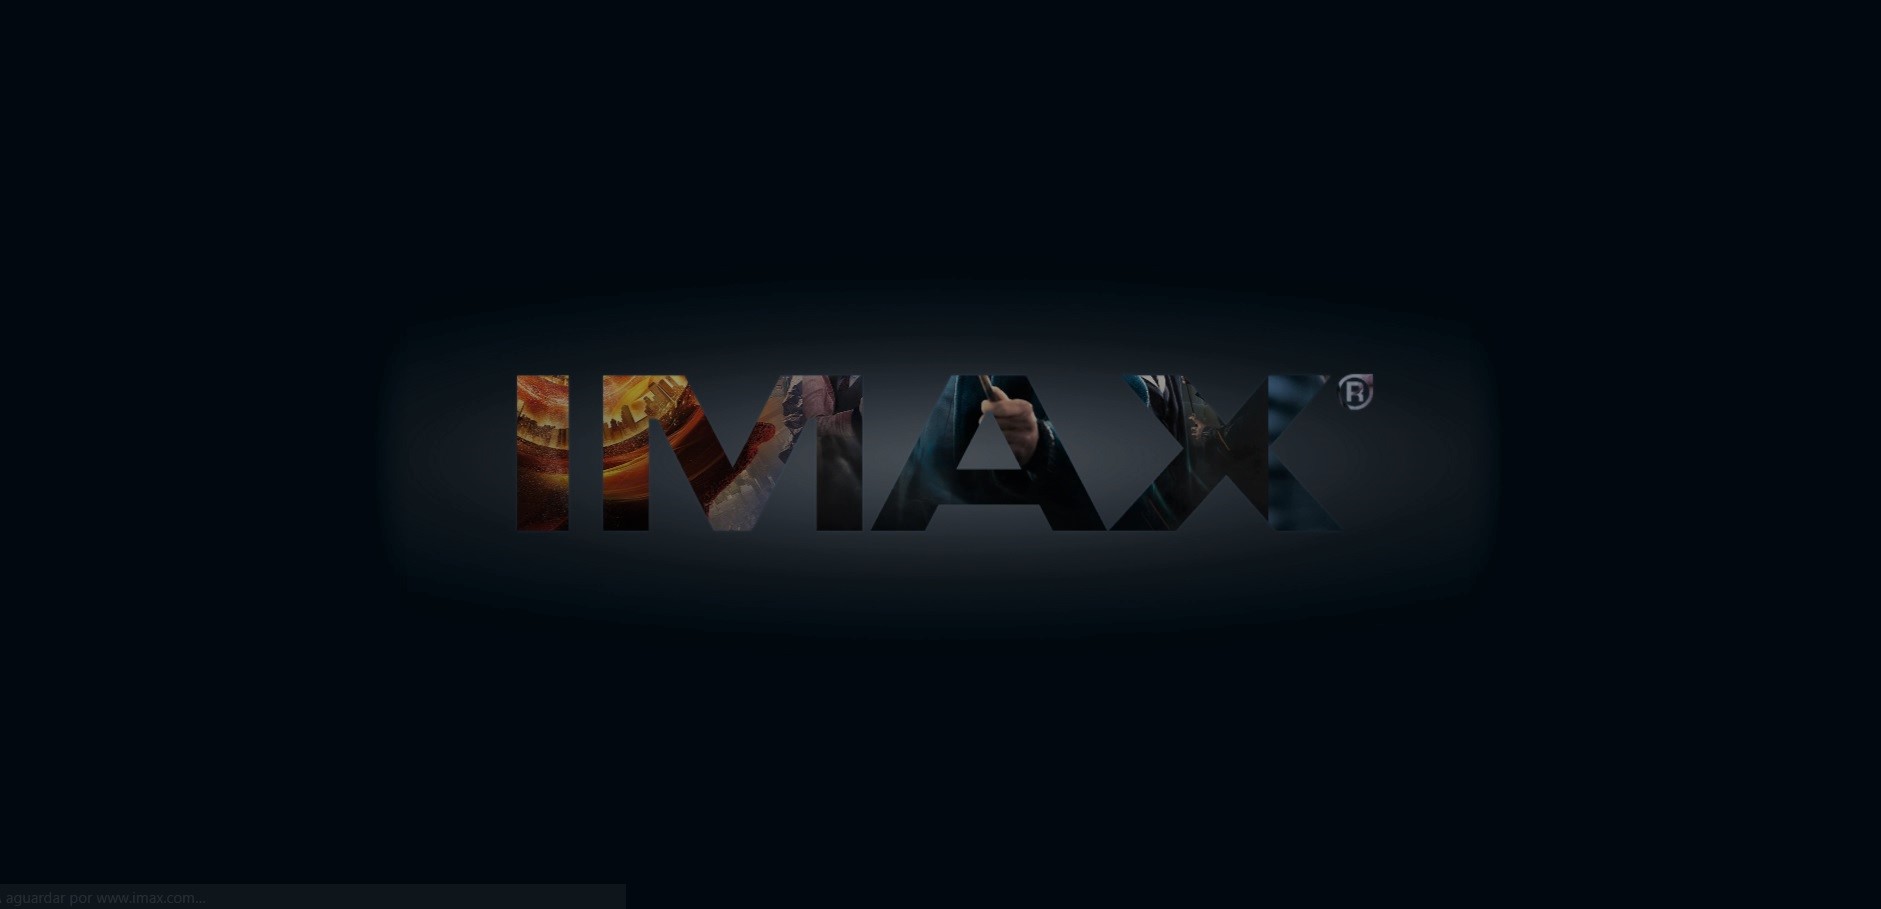 IMAX VR